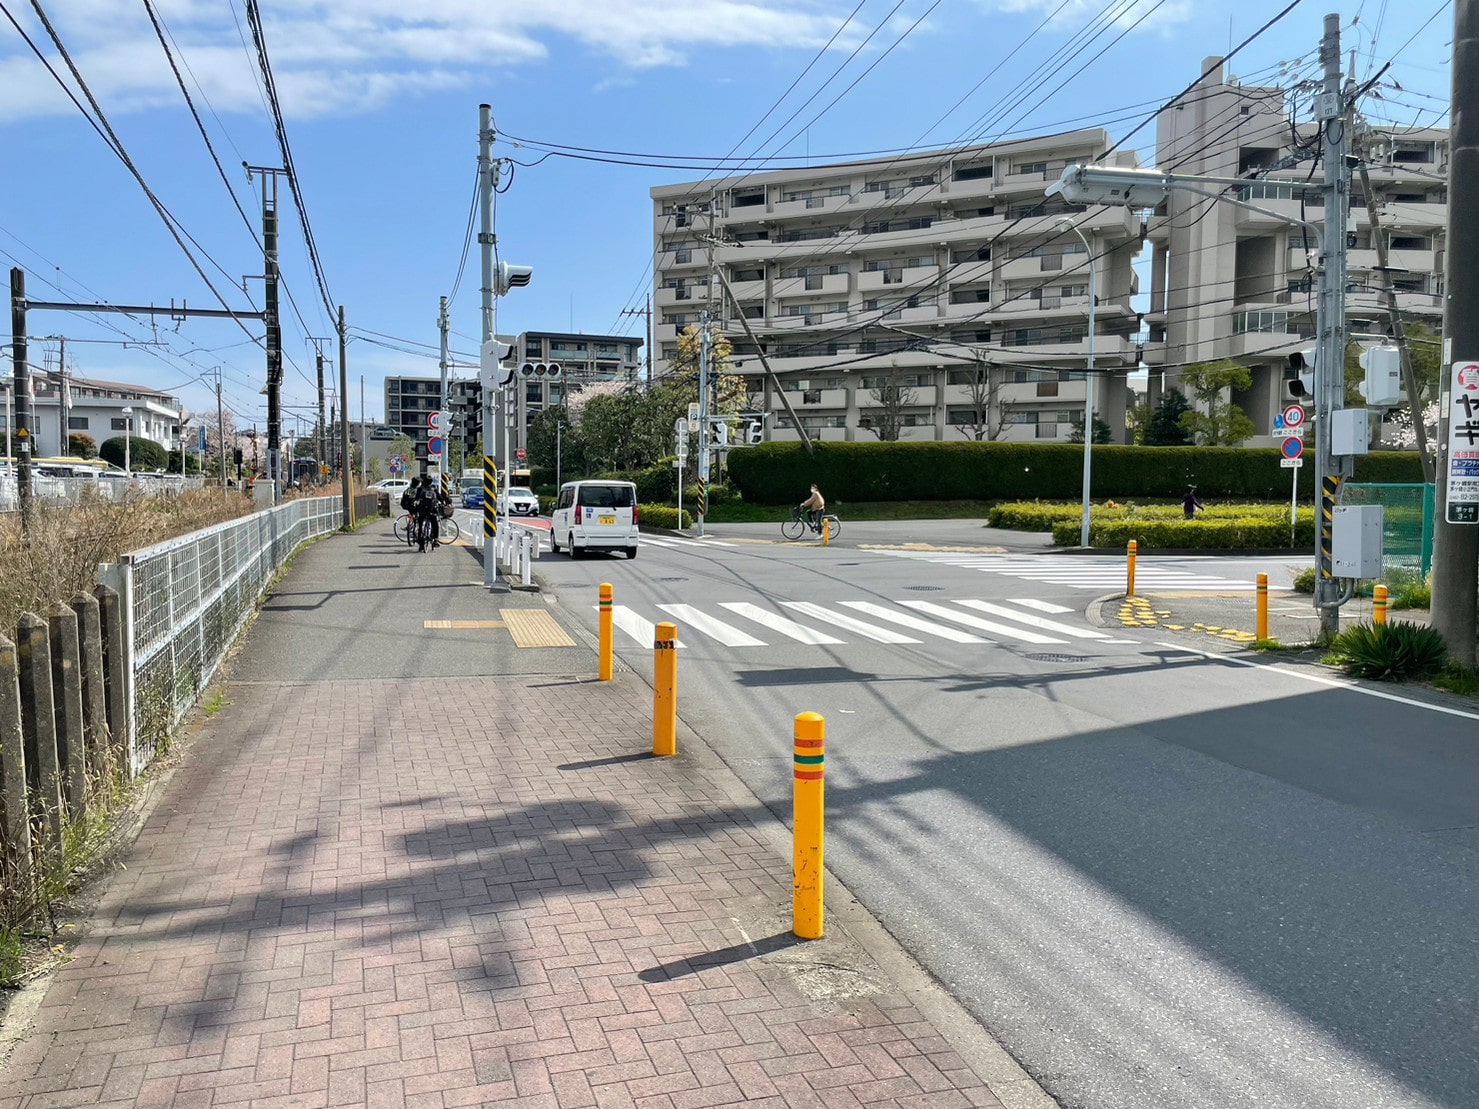 Apple GYM（アップルジム）イオン茅ヶ崎中央店までの道のり（JR線）1-3交差点を右に曲がってください。